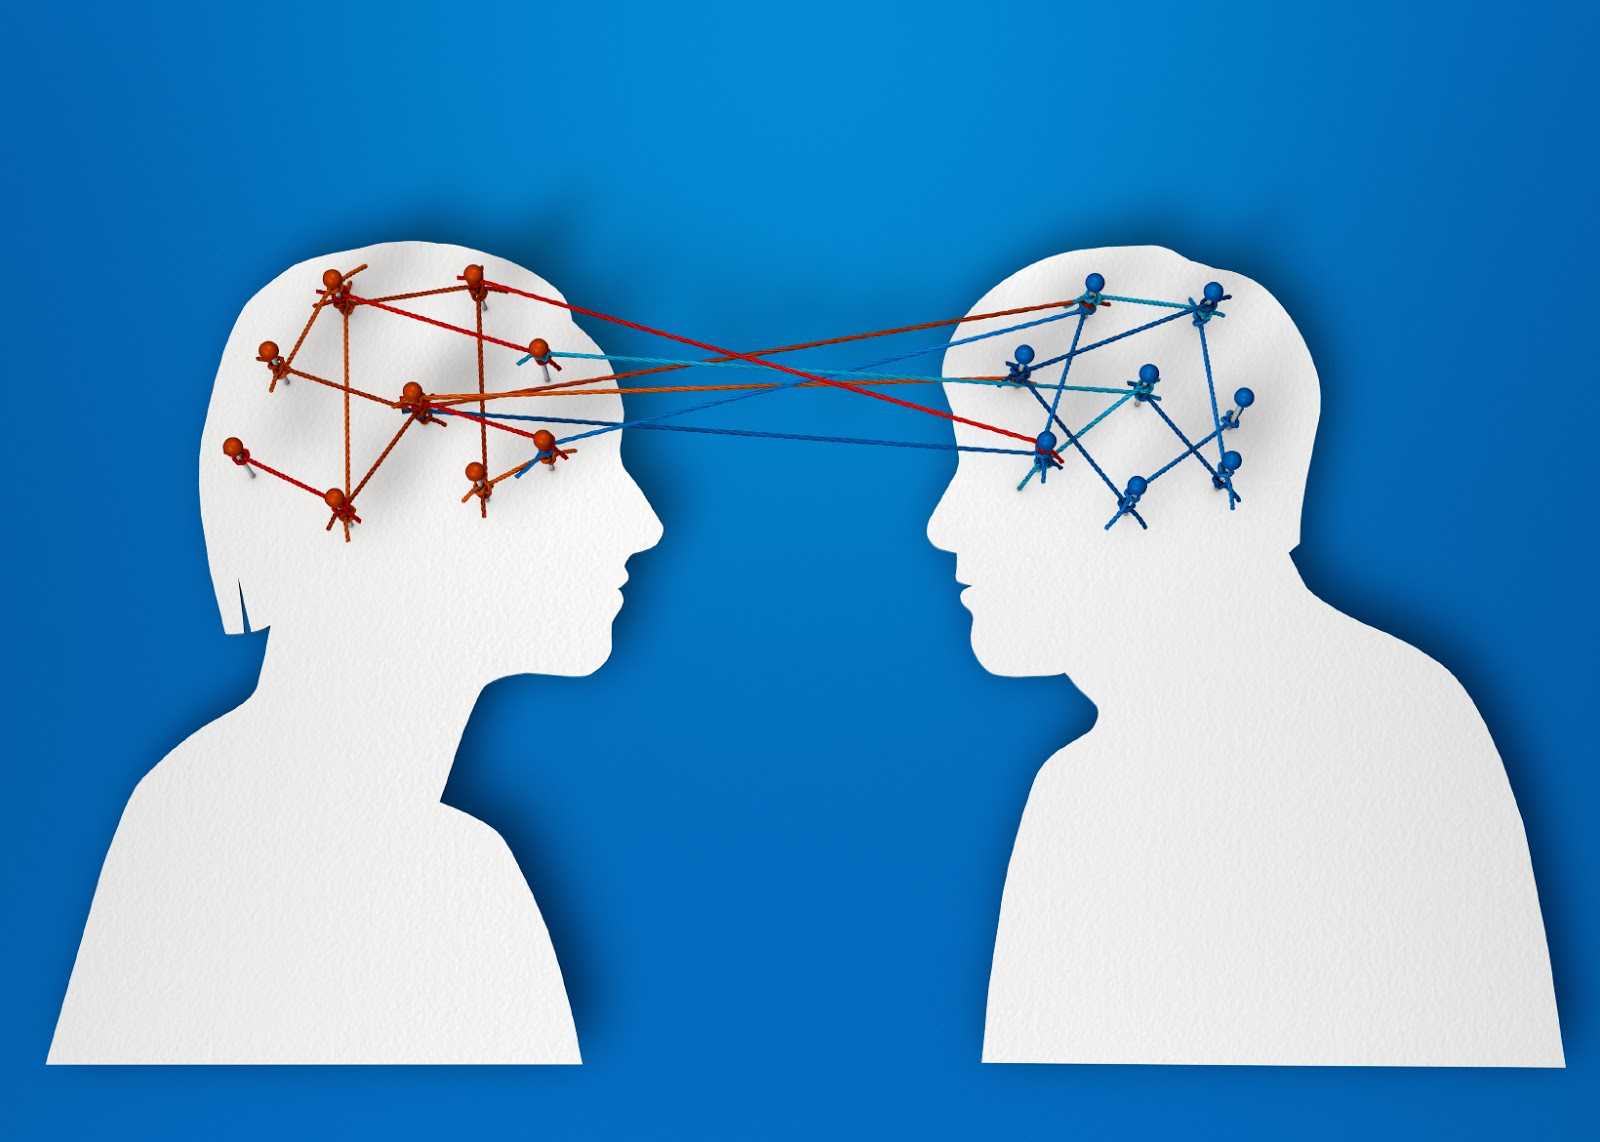 Ментально связаны. Связь между людьми. Когнитивная эмпатия. Чтение мыслей. Взаимосвязь между людьми.